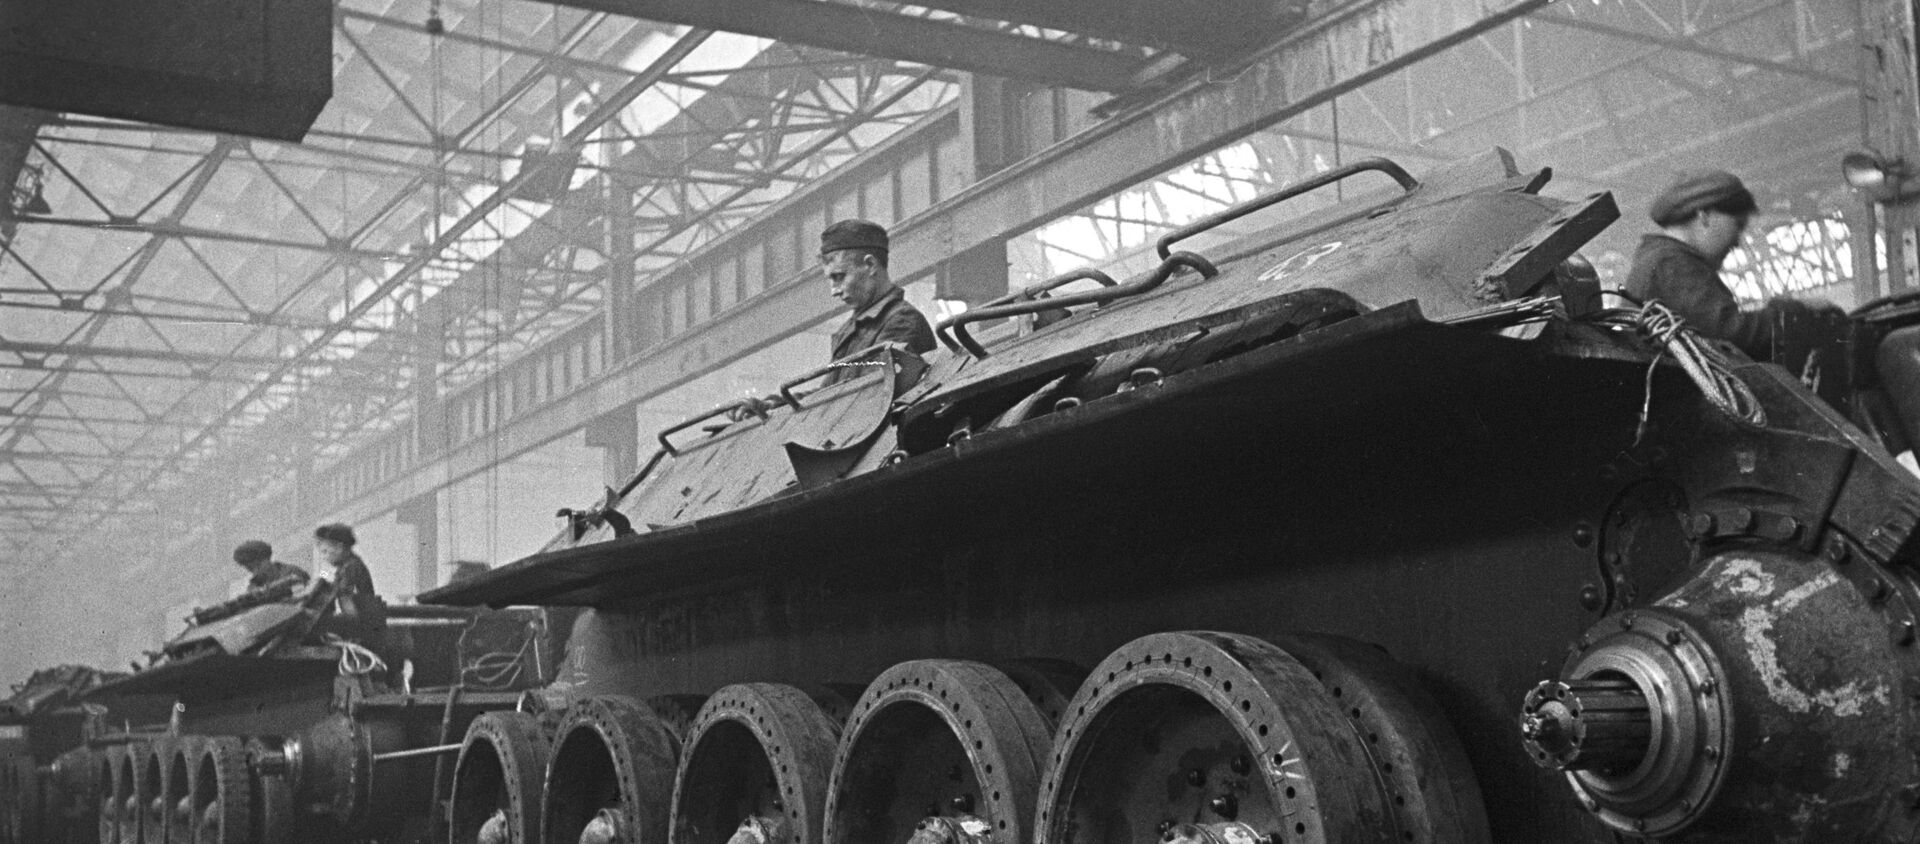 Dây chuyền lắp ráp xe tăng tại Nhà máy xe tăng Ural số 183 ở Nizhny Tagil (nay là Tập đoàn khoa học và sản xuất Uralvagonzavod mang tên F.E.Dzerzhinsky). - Sputnik Việt Nam, 1920, 13.09.2021